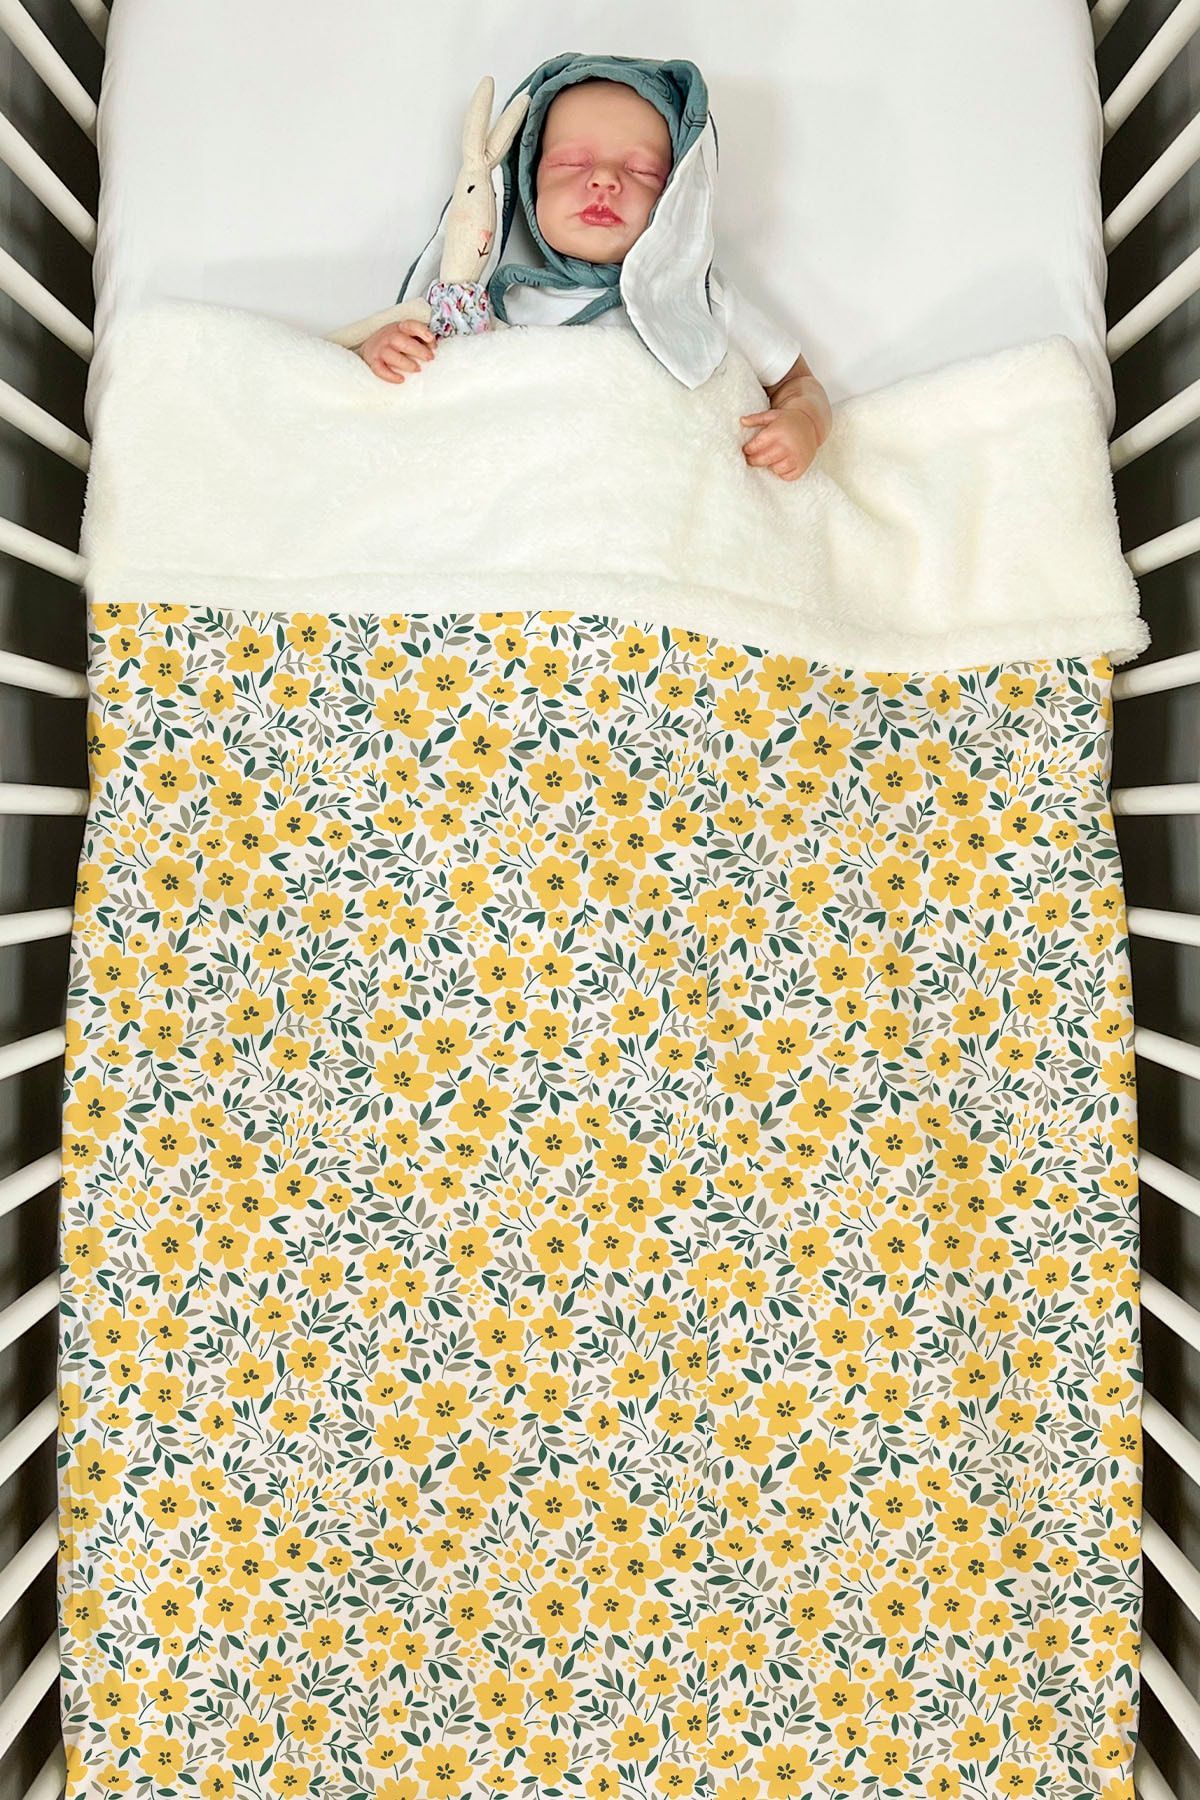 Tuğba Kuğu Peluş Çift Yüz Battaniye (80X120) - Iconic - Sarı Minik Çiçekler